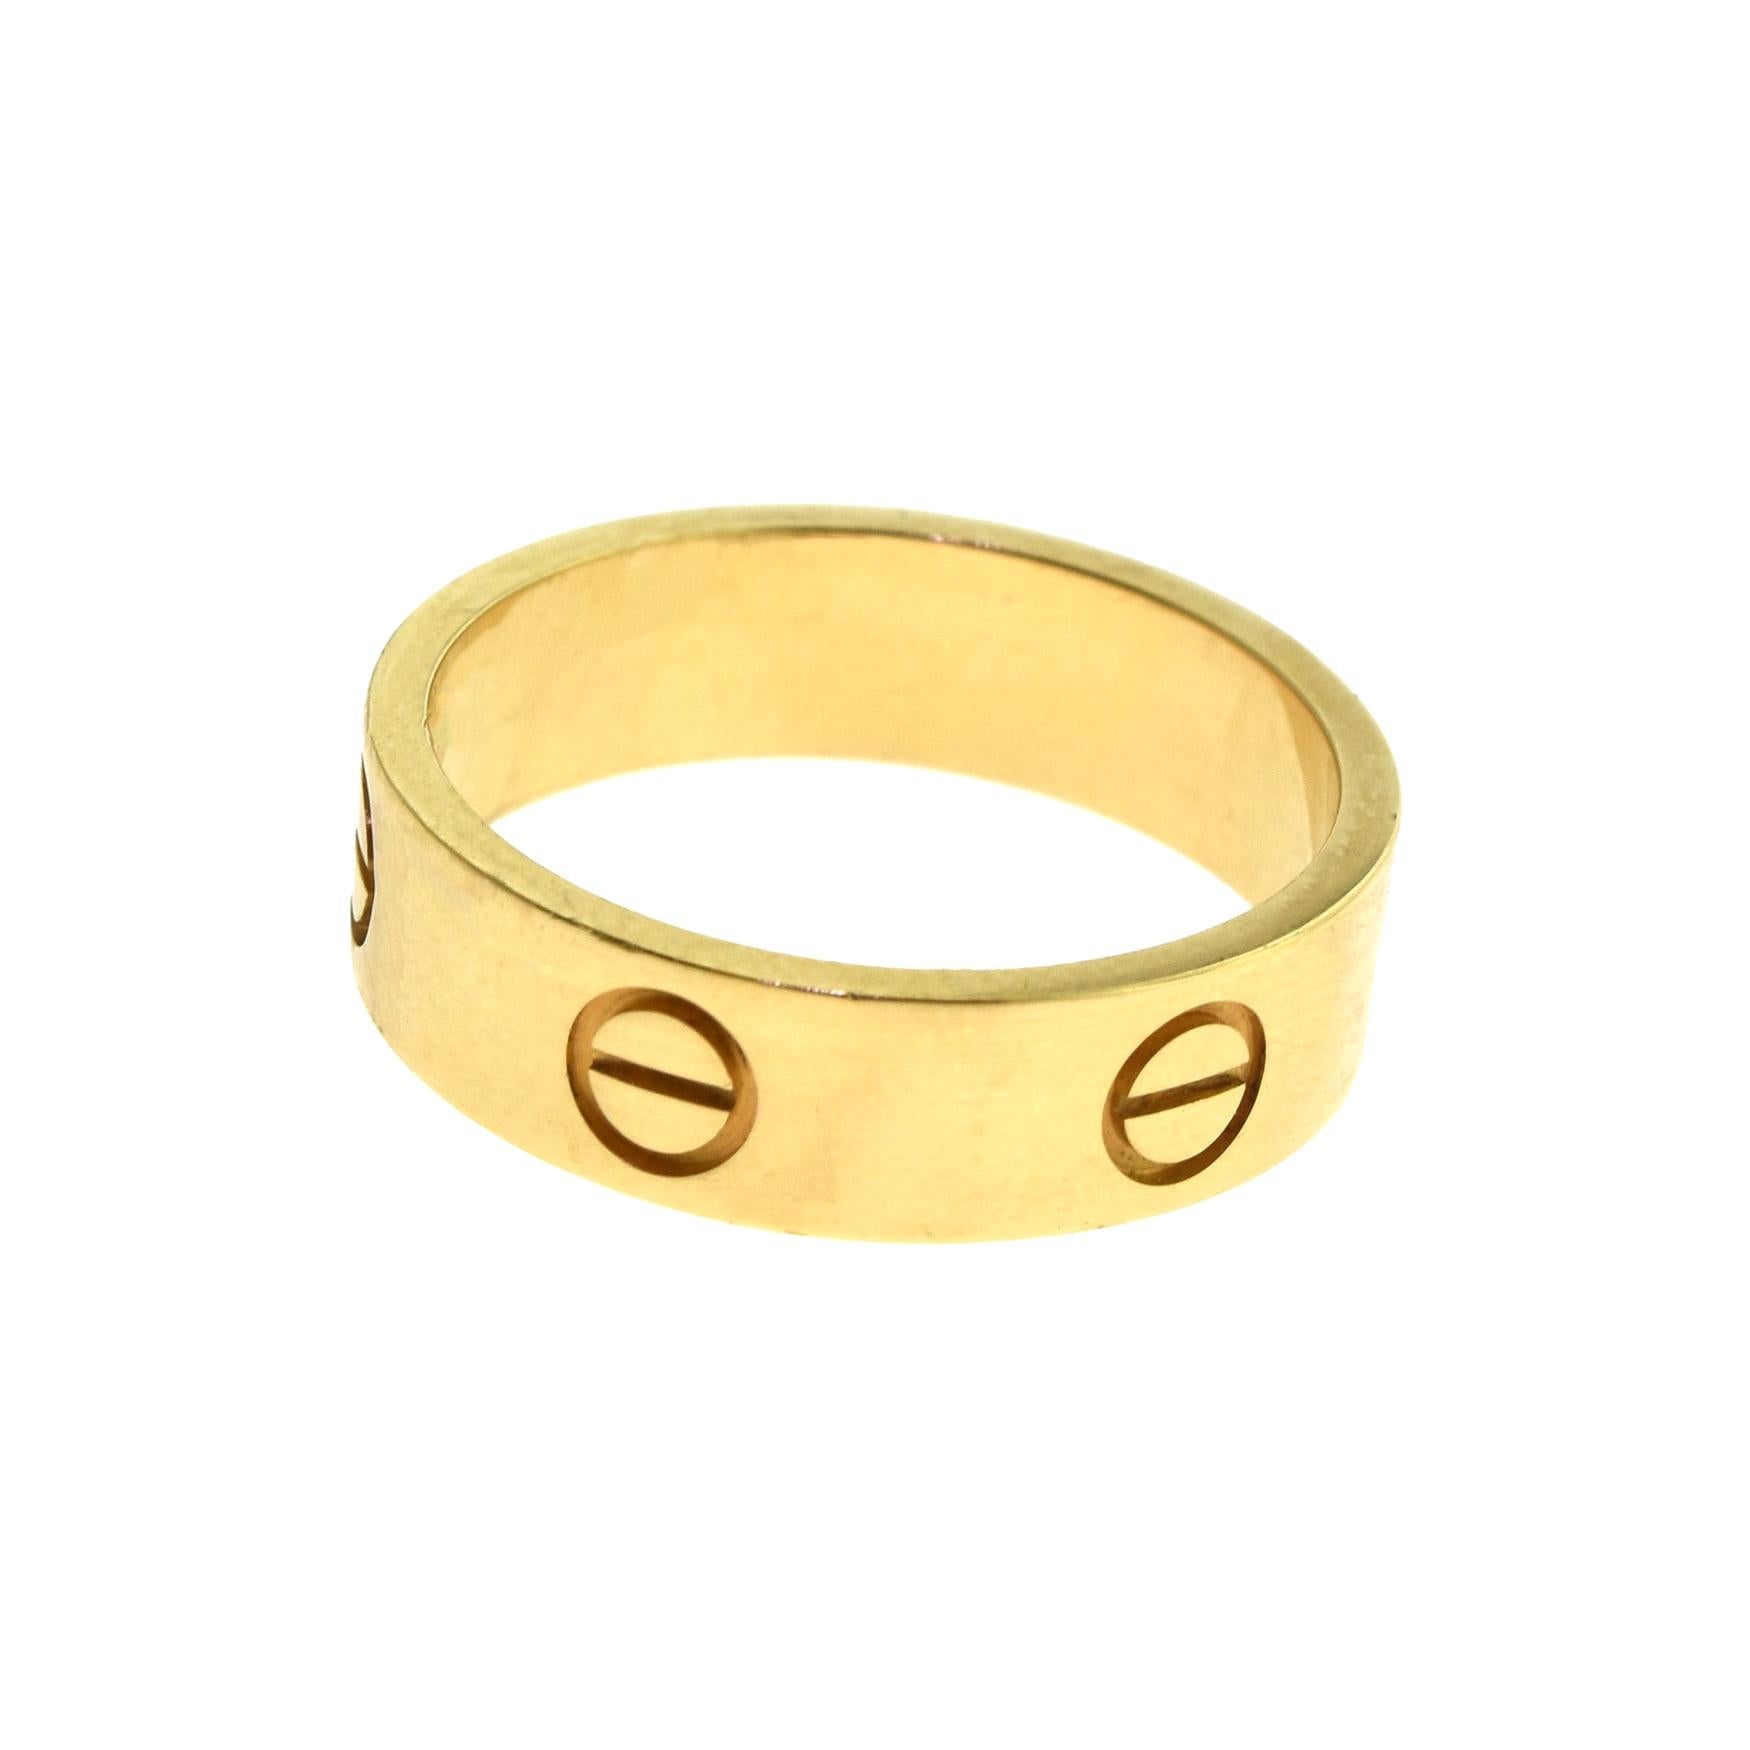 Cartier Love Ring in 18 Karat Yellow Gold Euro Ring